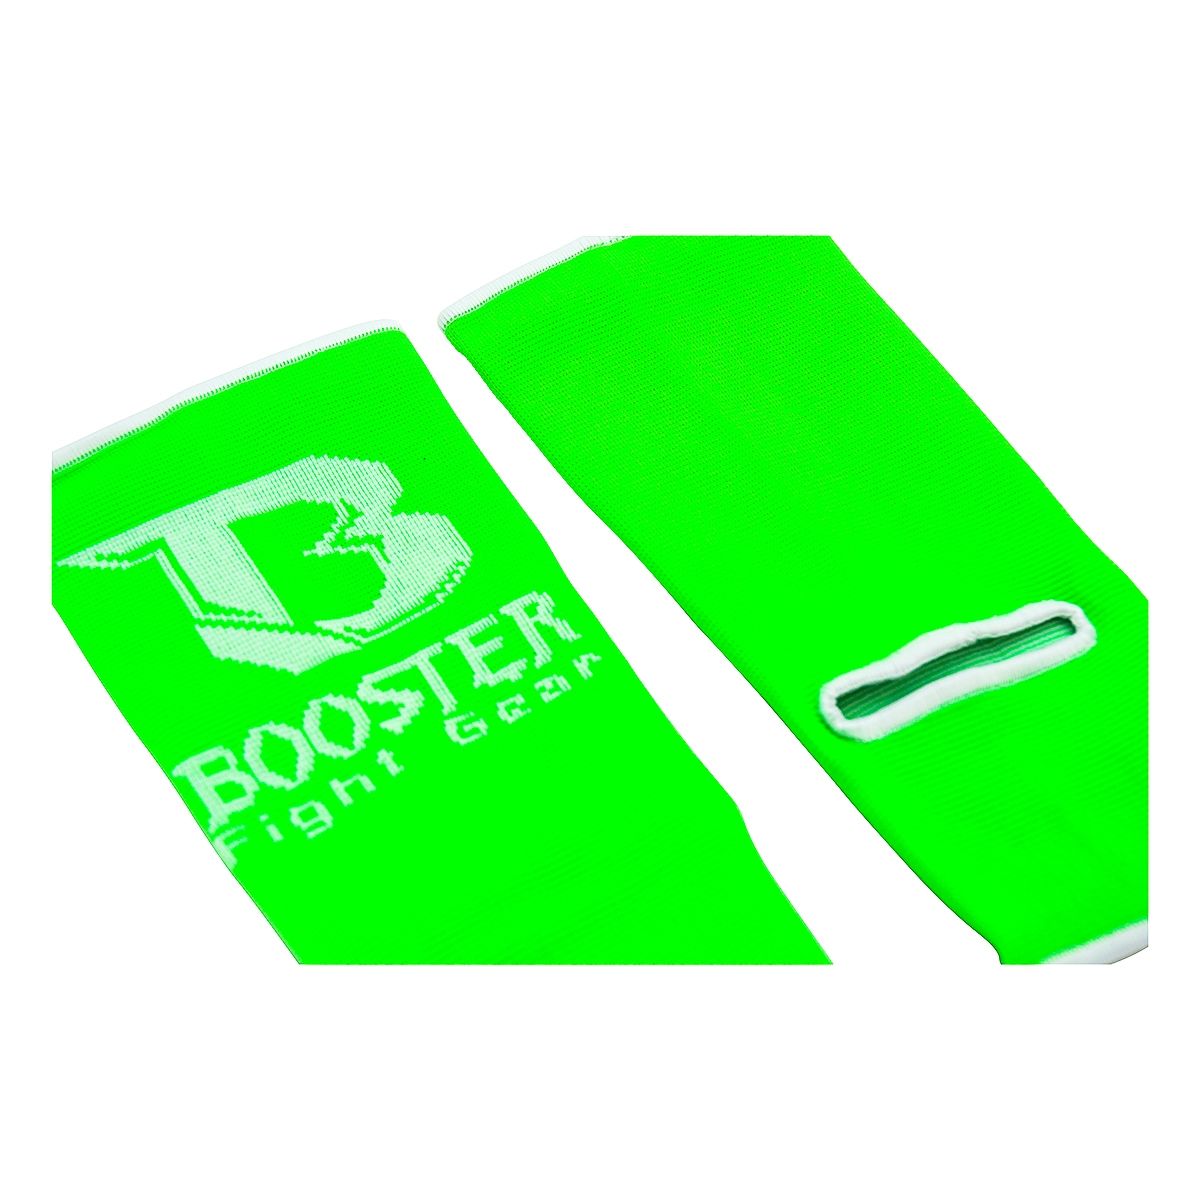 Booster Fight Gear -  Enkelsok - Ag pro - one size in het groen